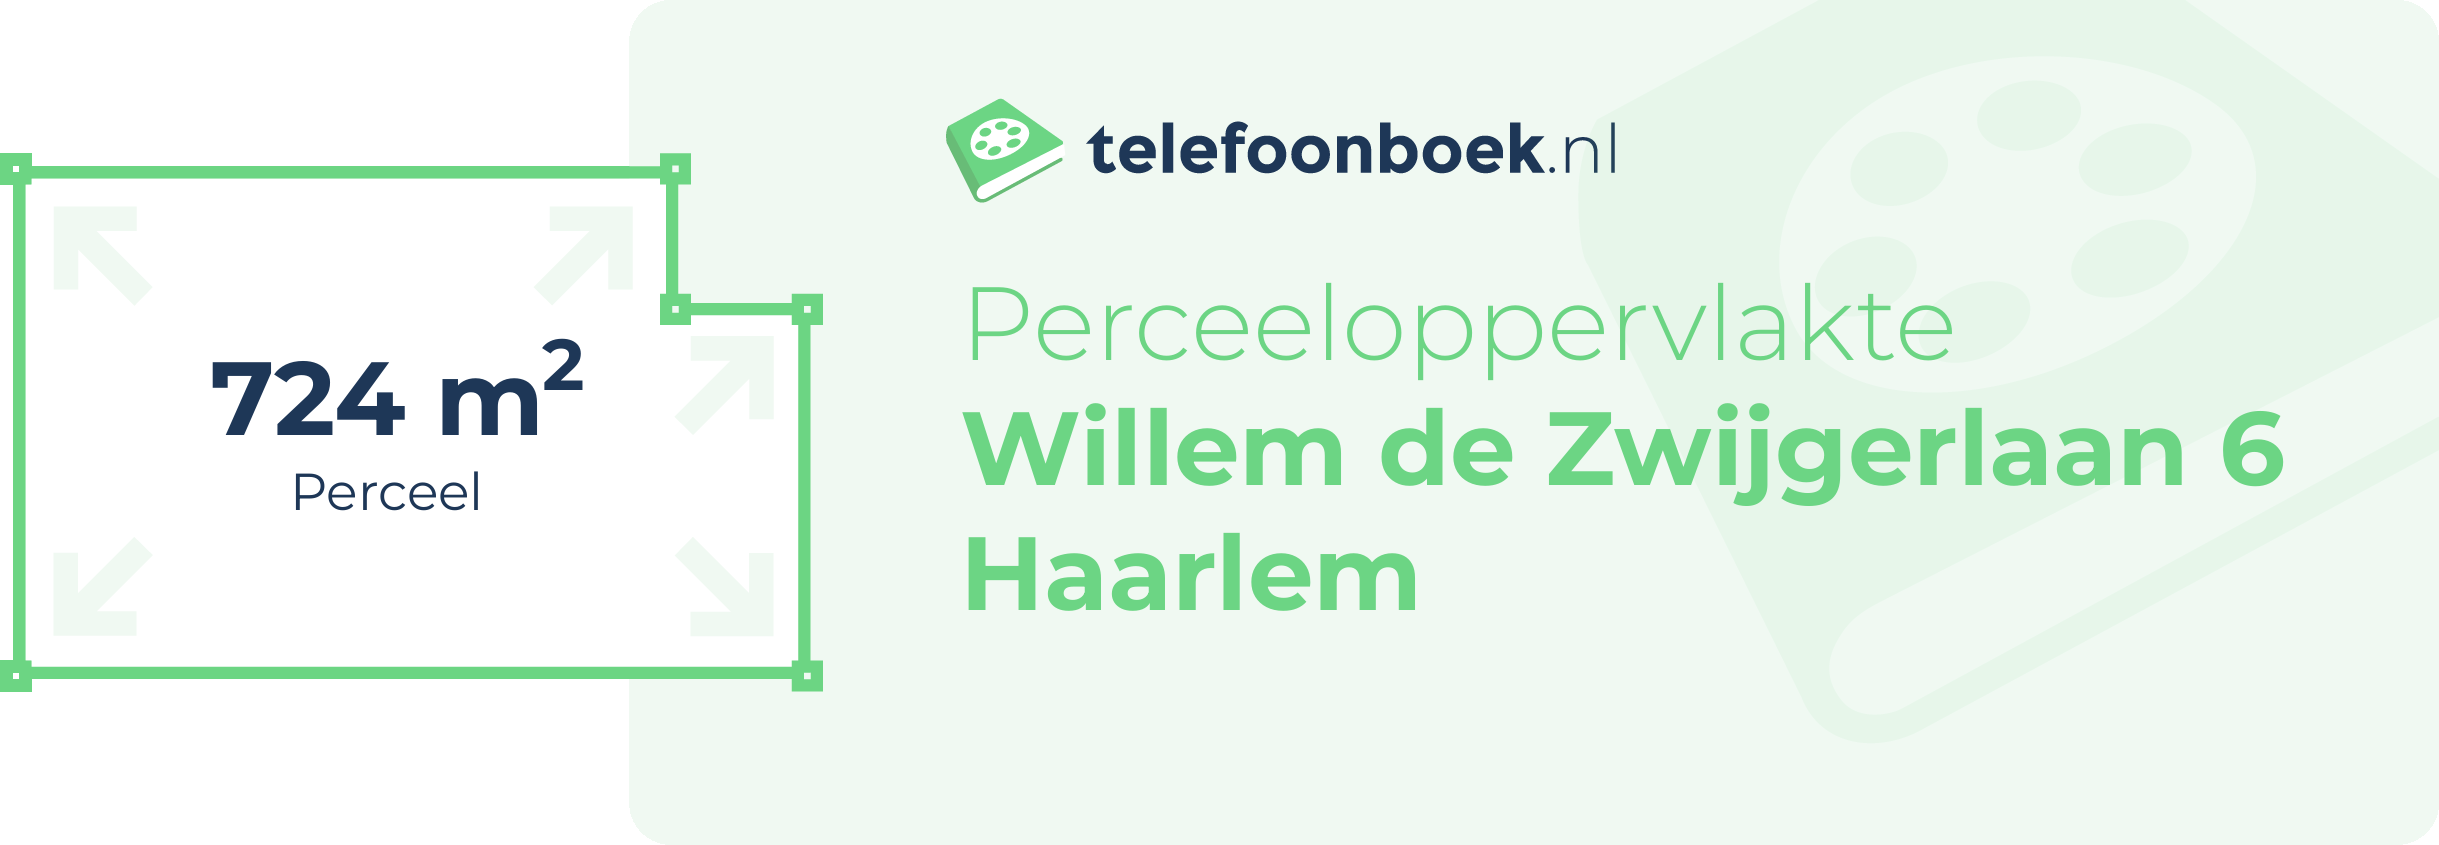 Perceeloppervlakte Willem De Zwijgerlaan 6 Haarlem